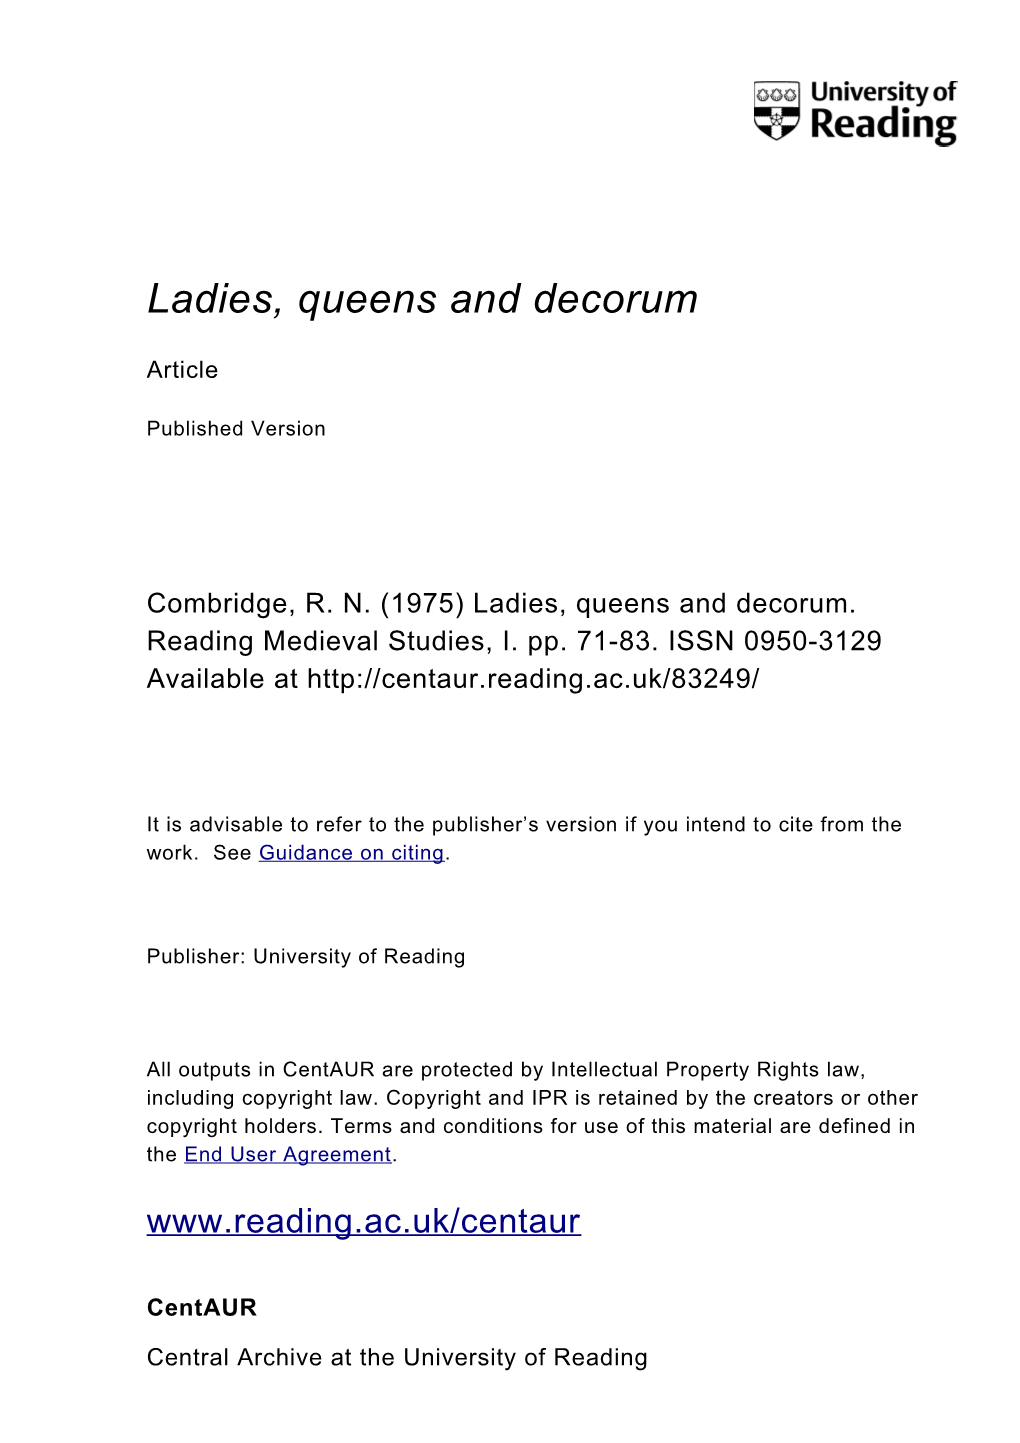 Ladies, Queens and Decorum